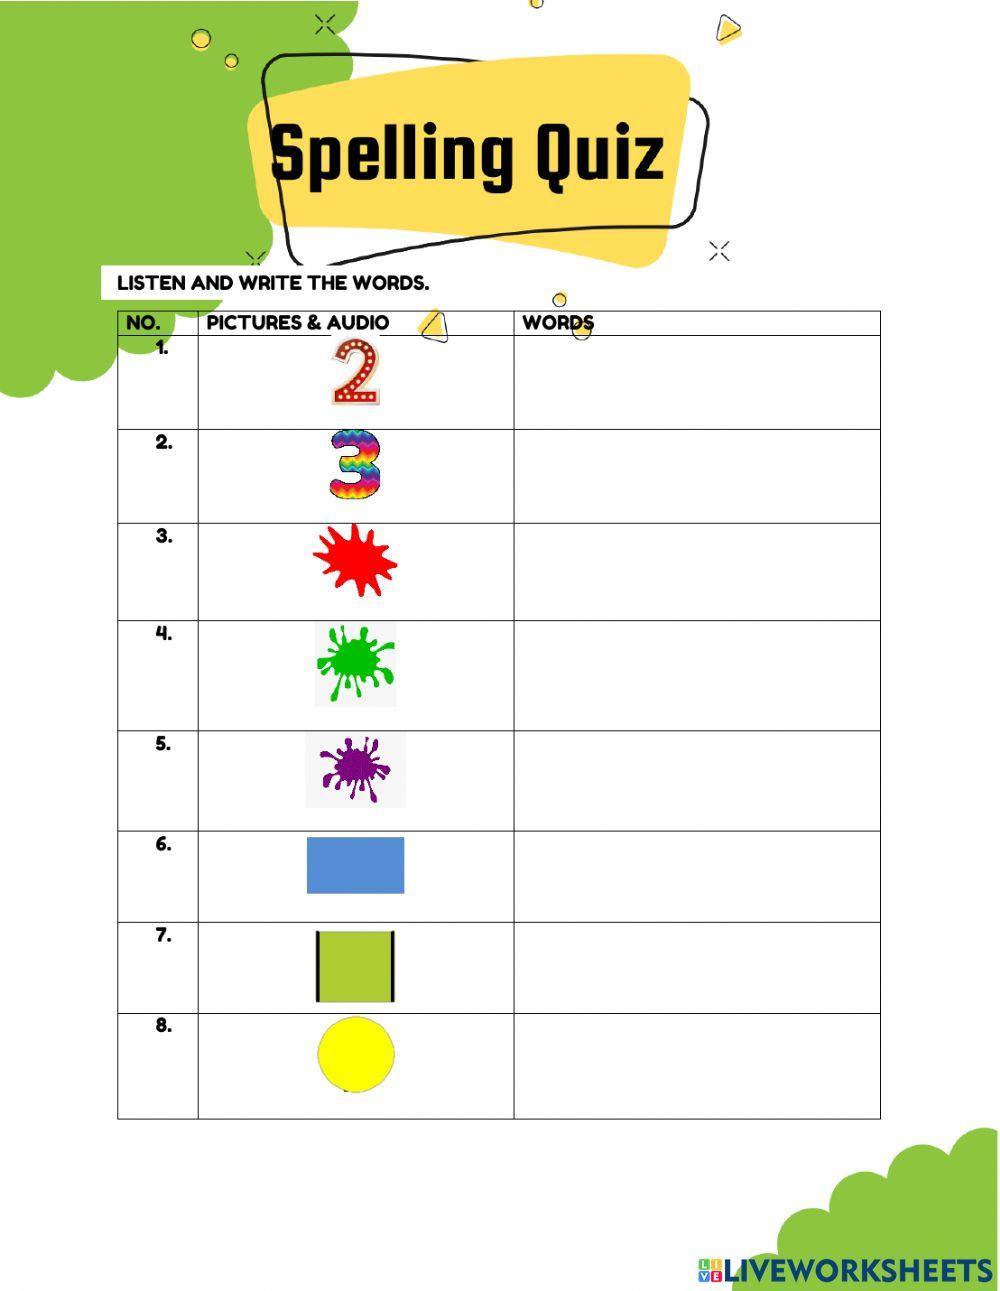 Spelling quiz